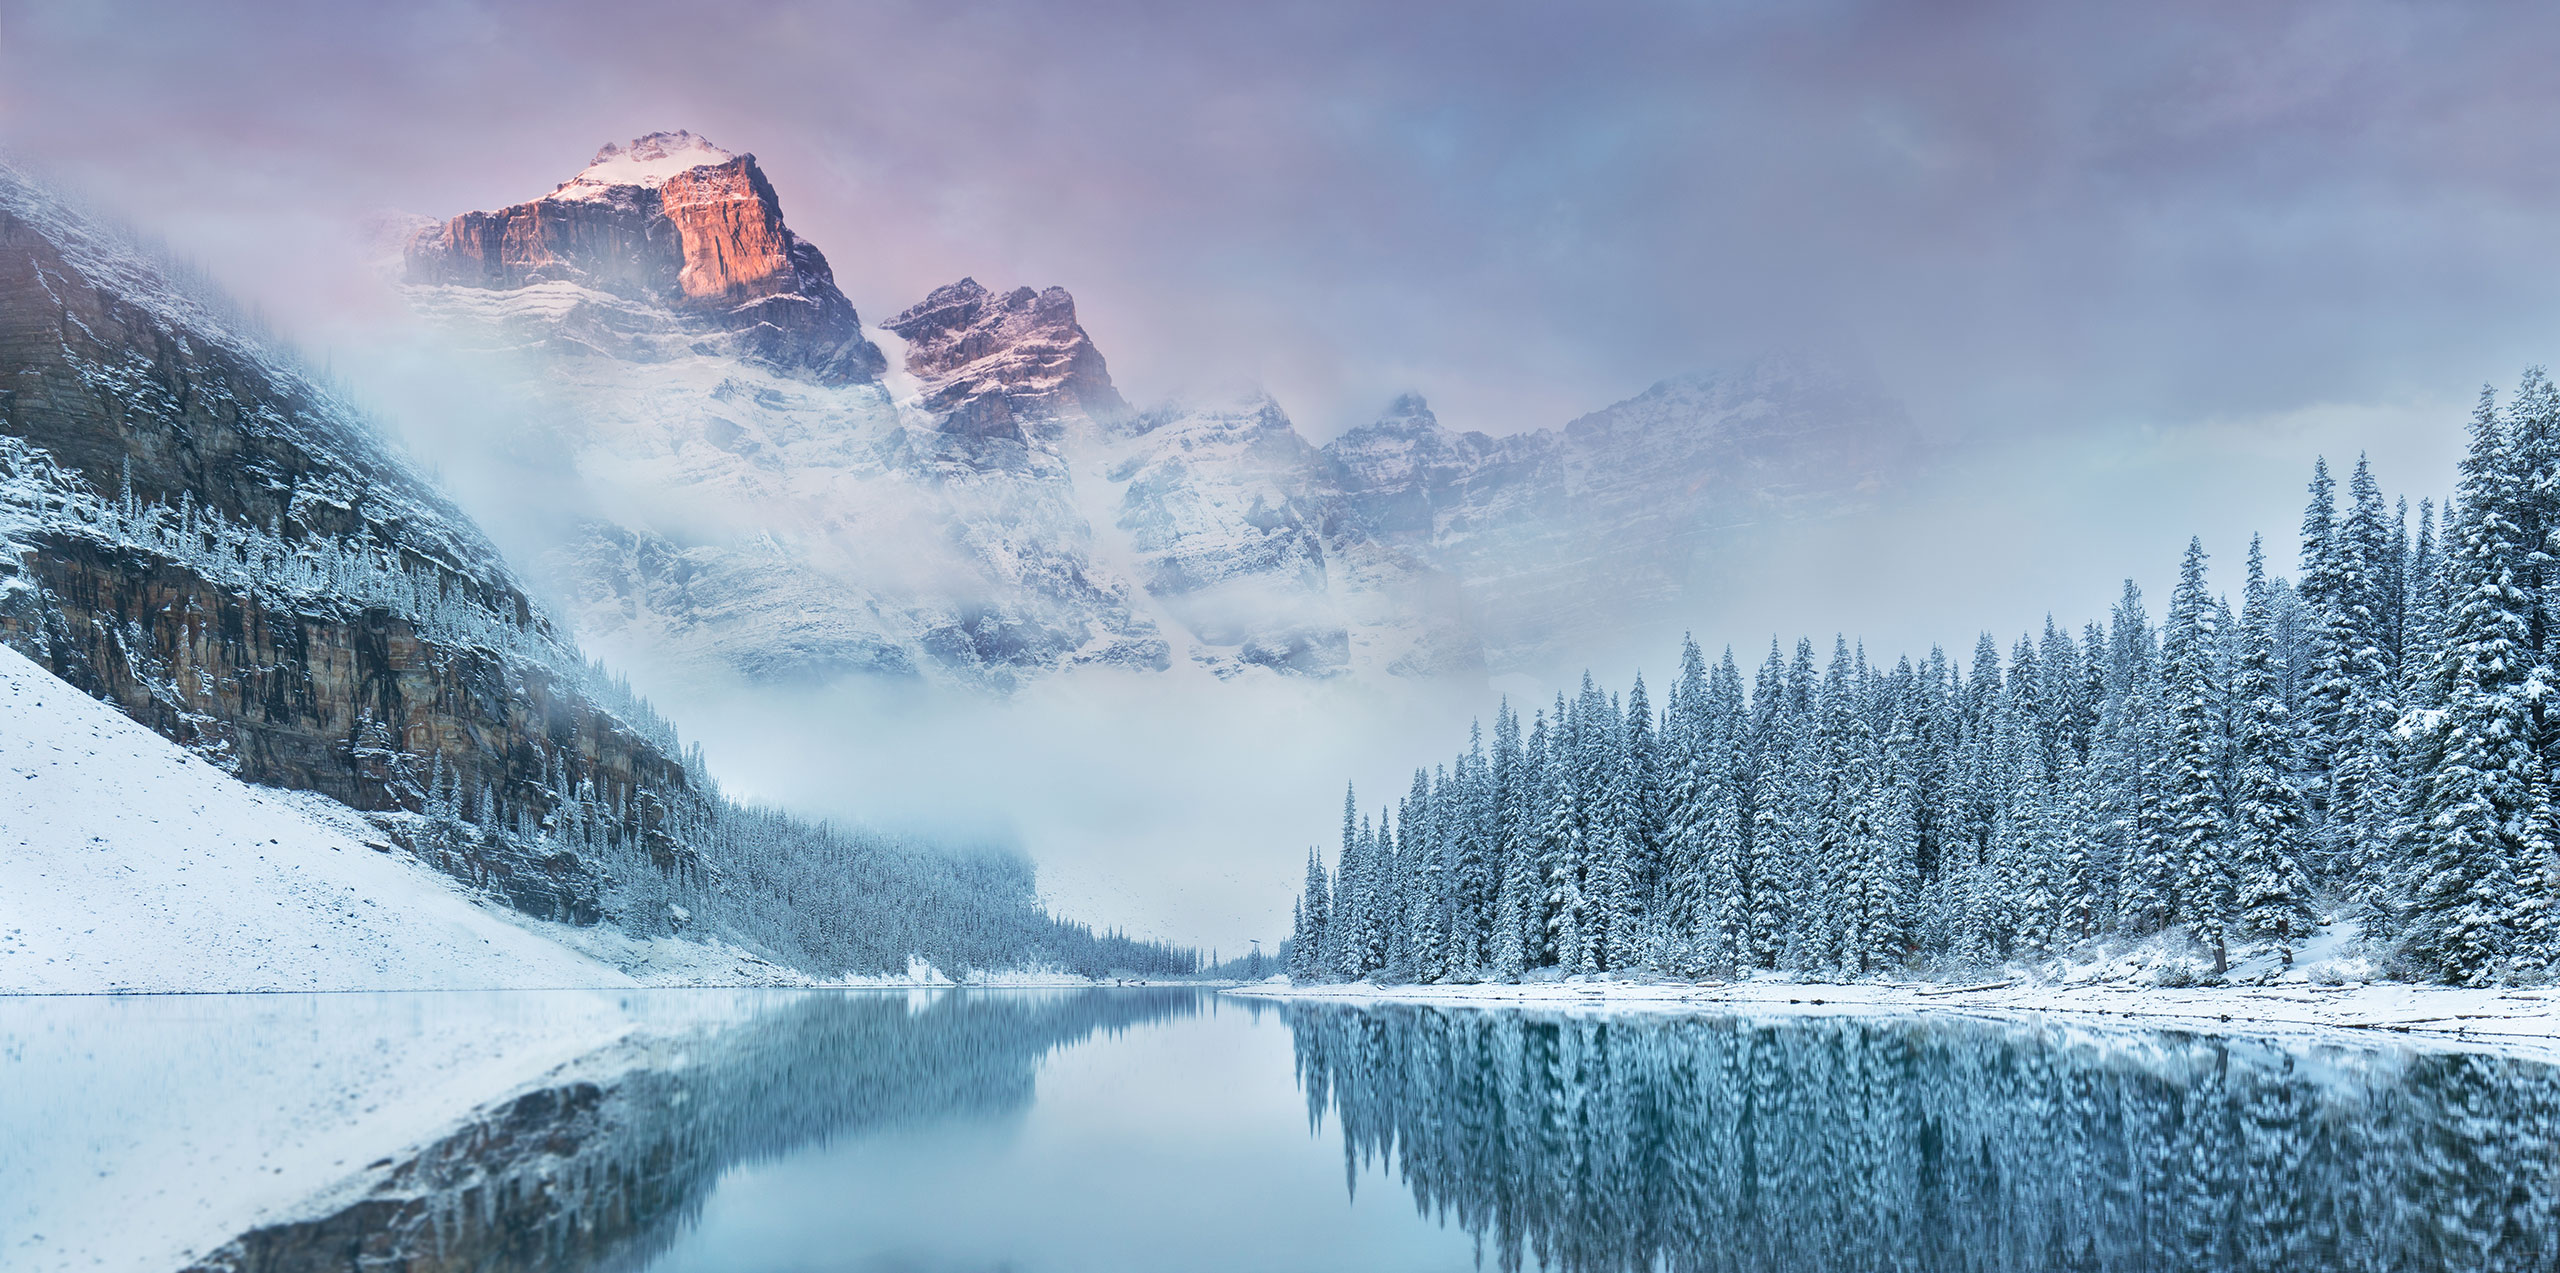 Moraine Lake in Canada; Courtesy of Michal Balada/Shutterstock.com